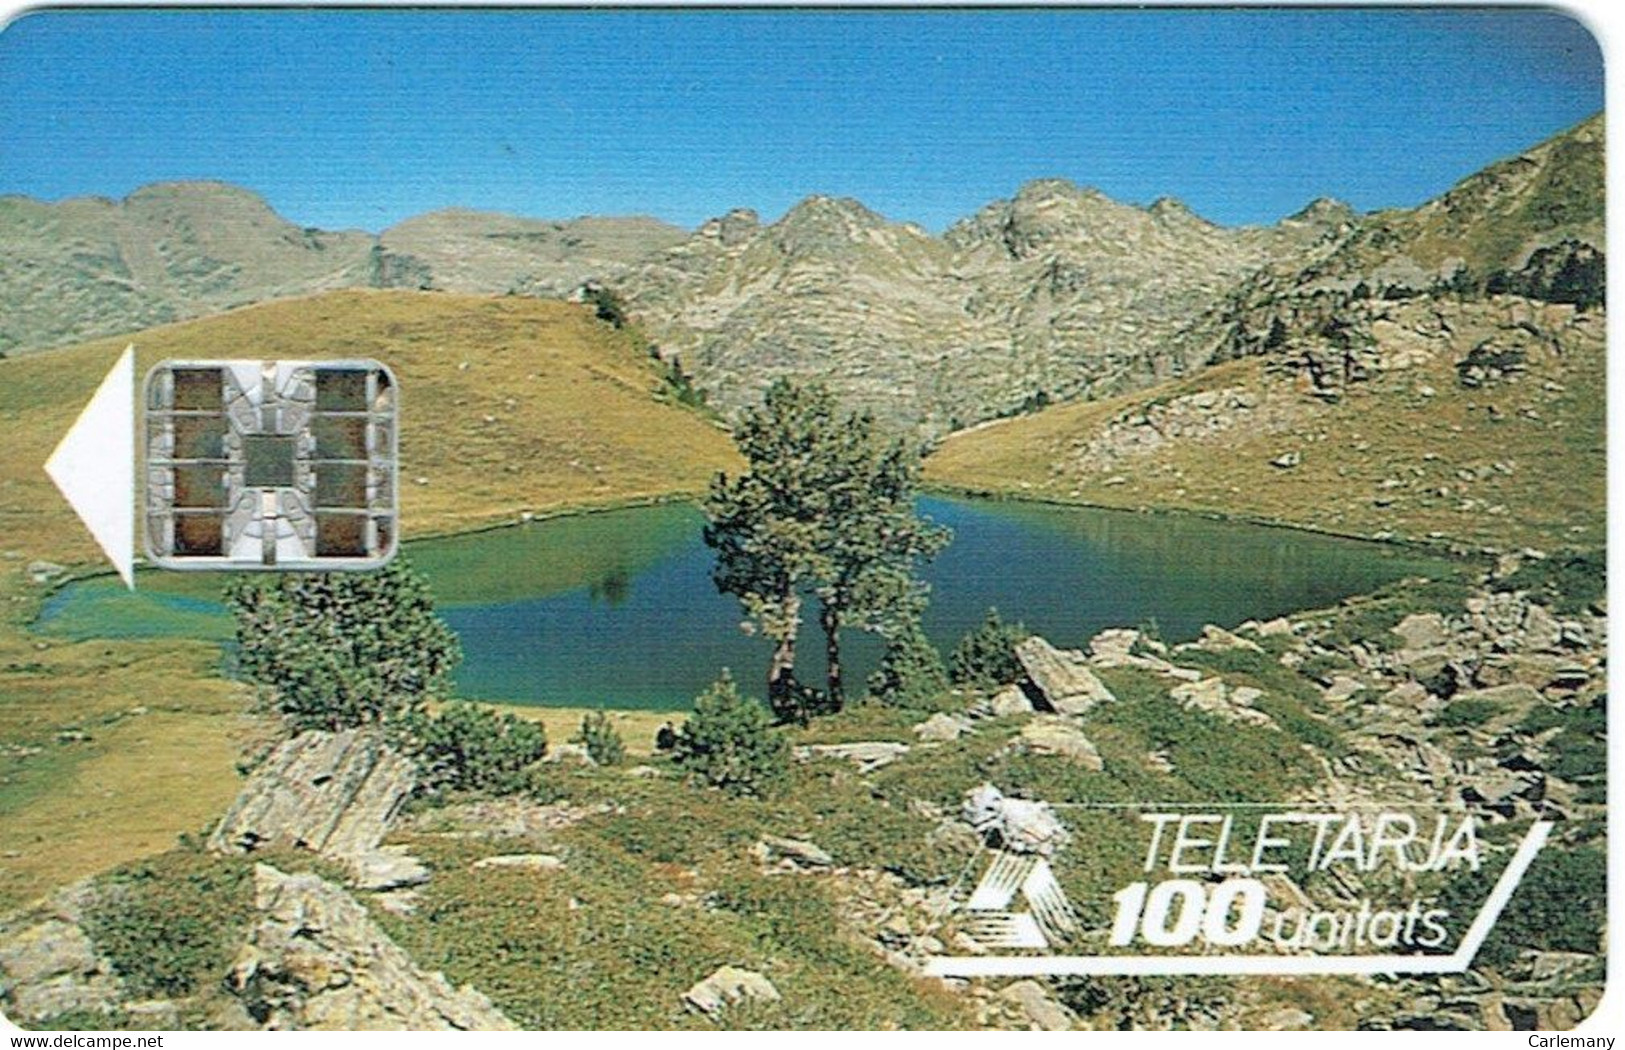 TELECARTE ANDORRE USAGE LUXE 20 Telecartes Diff. A Mon Election - Andorre